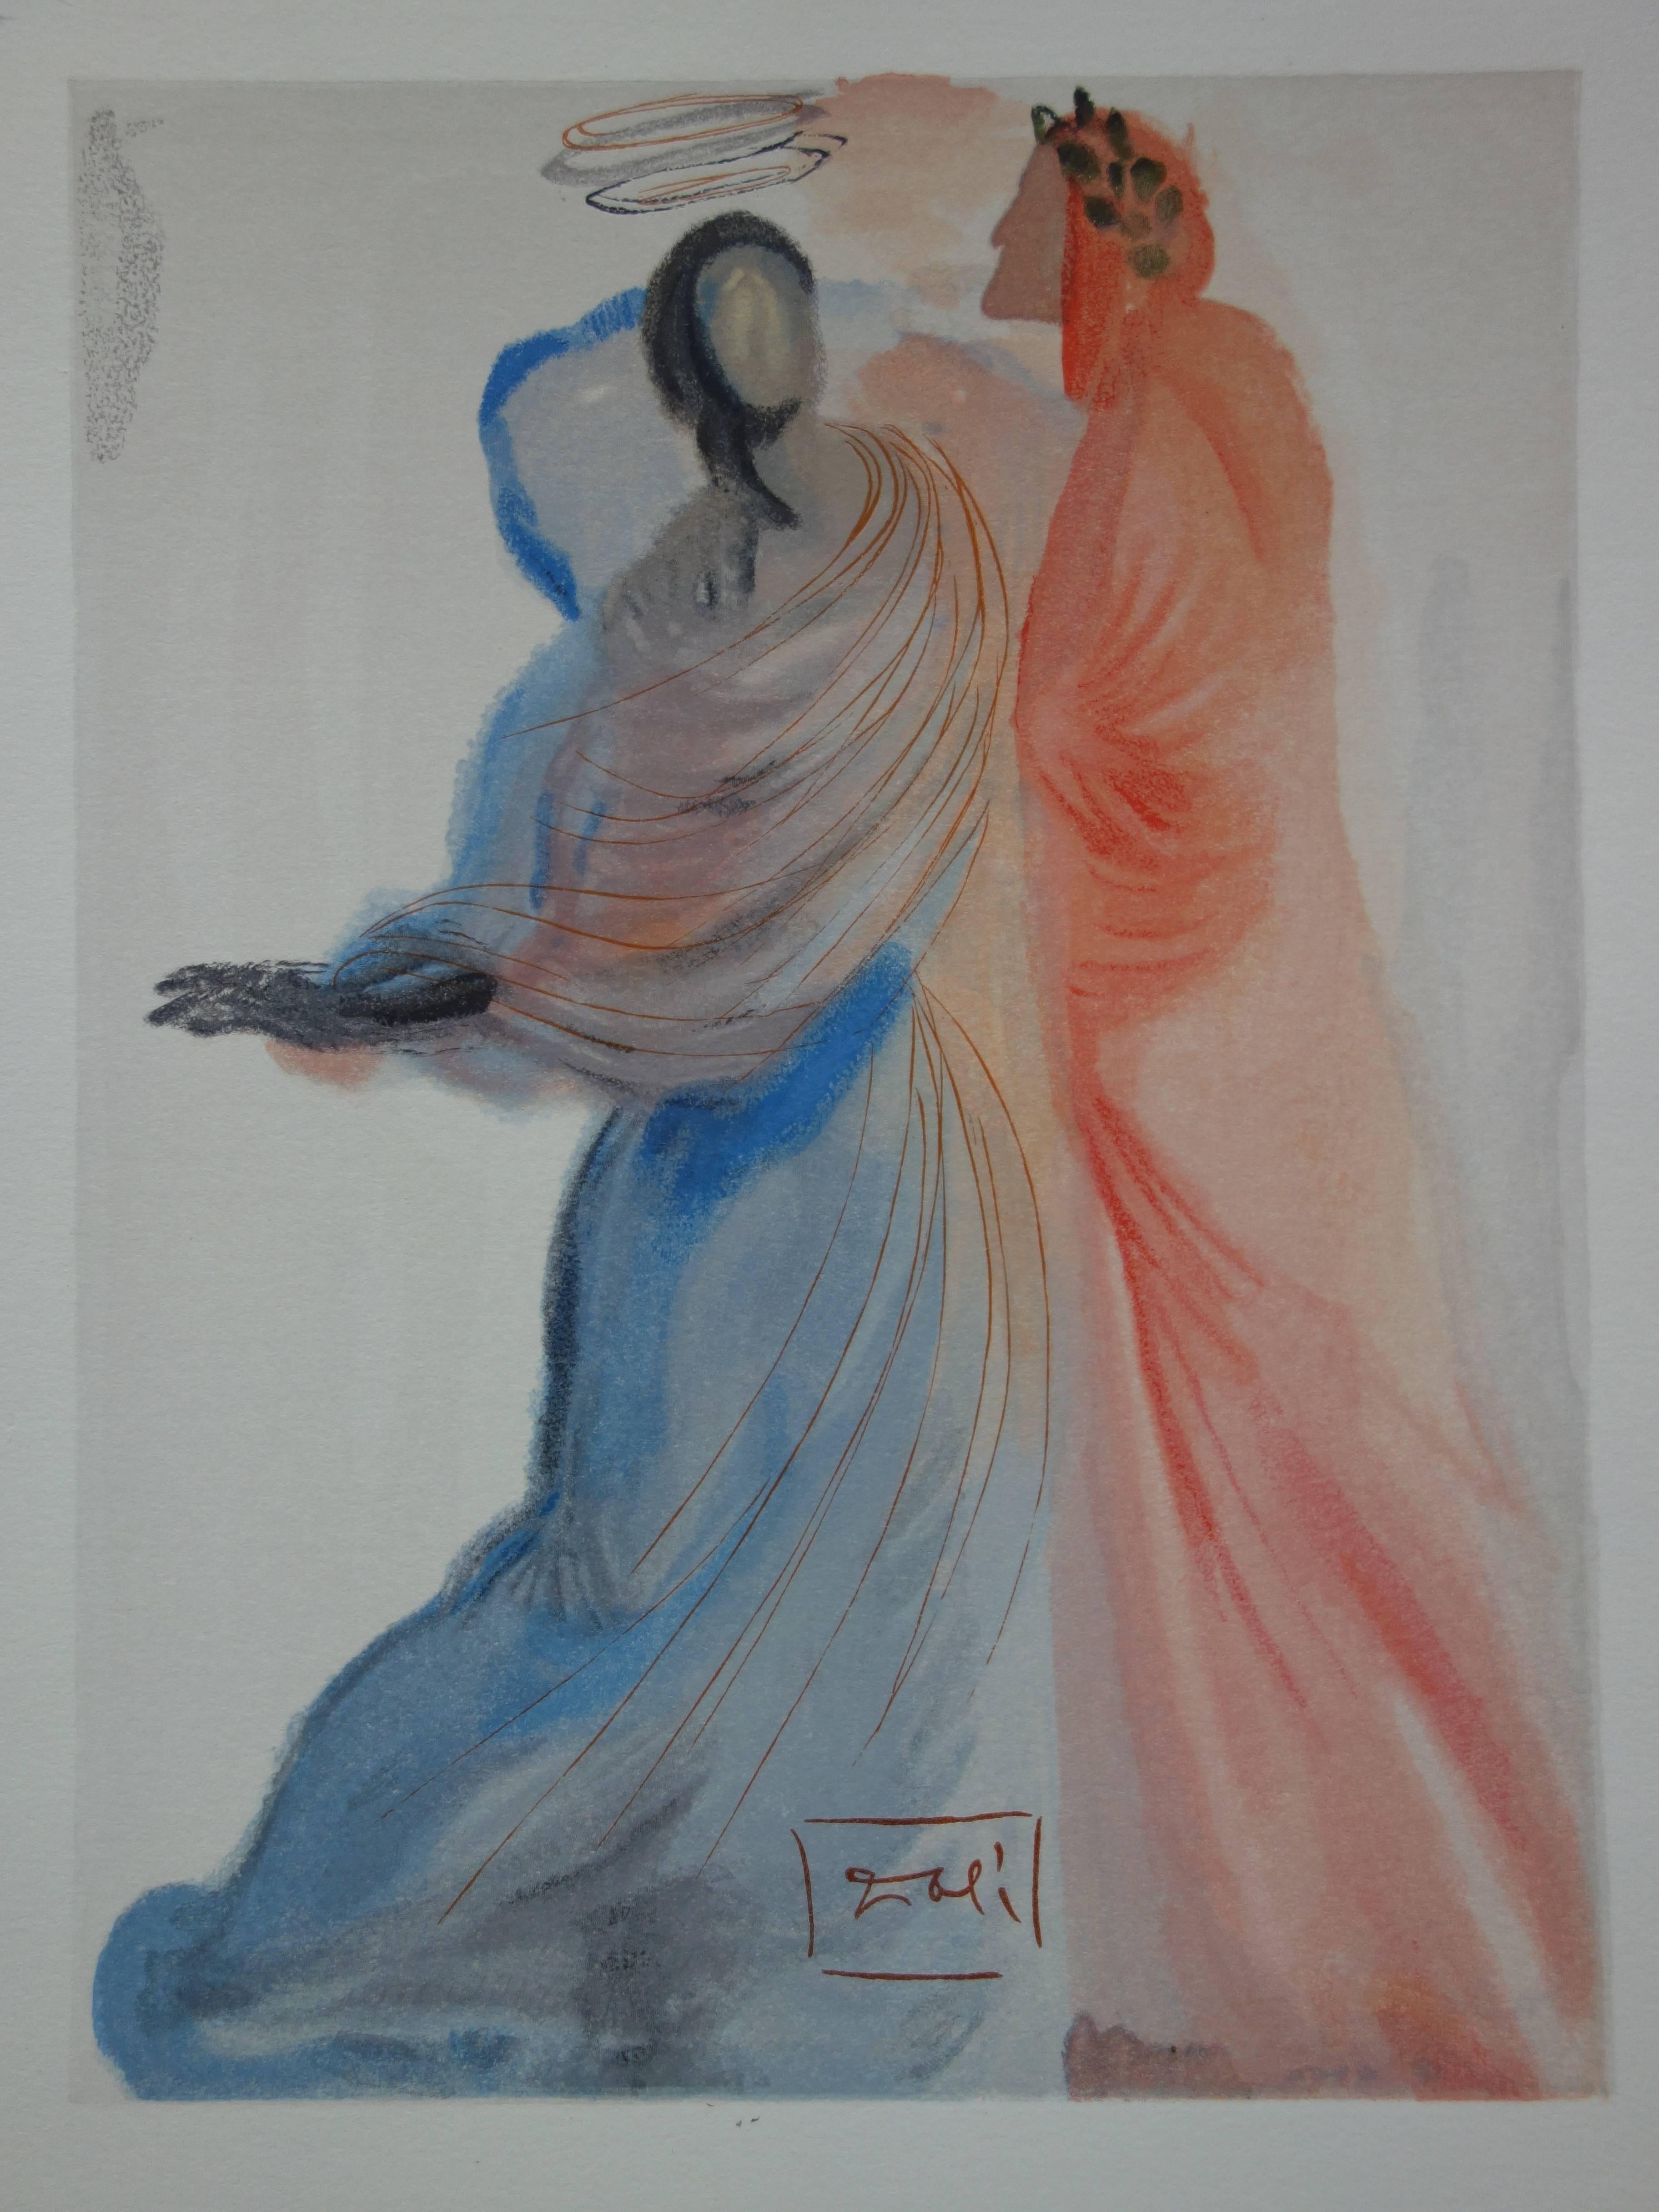 Heaven 18 - Beatrice's Splendor - gravure sur bois originale - 1963 - Surréalisme Print par Salvador Dalí